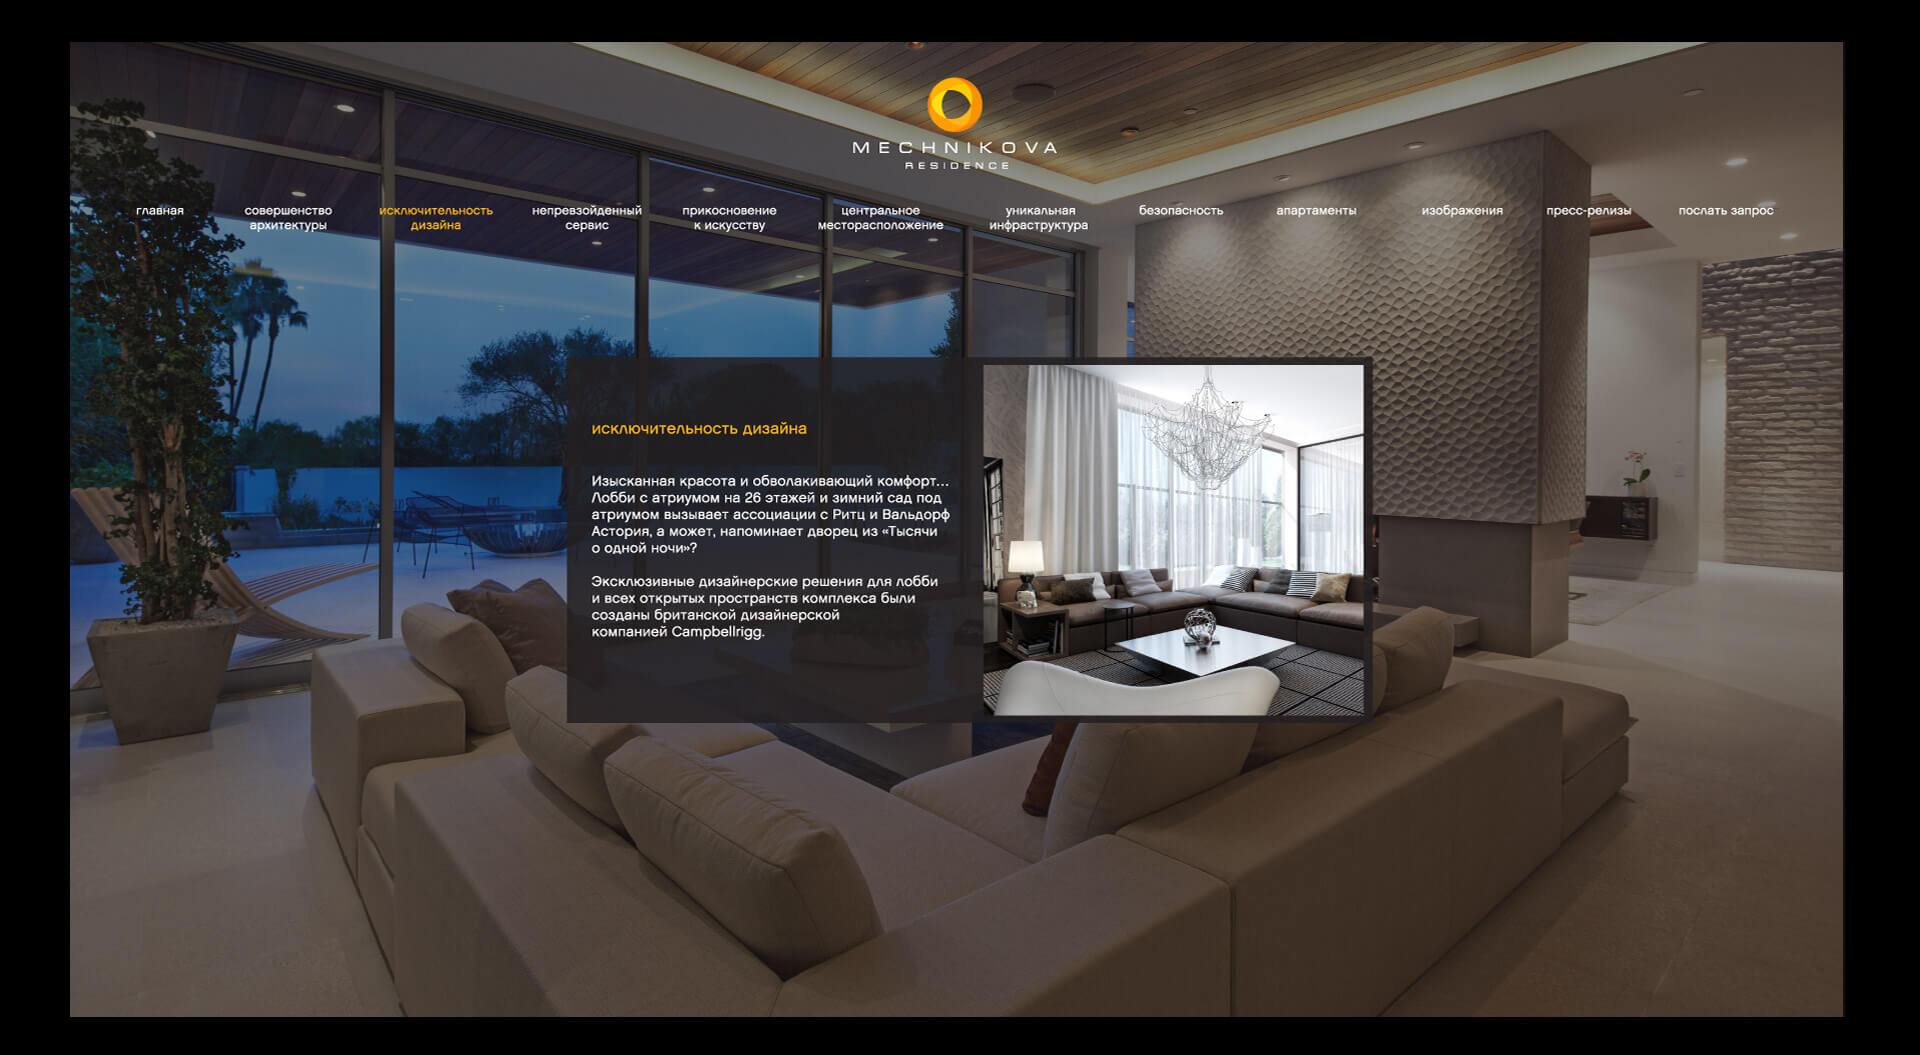 Residential luxury property branding, Mechnikova apartment interior, website design for Continuum Ukraine